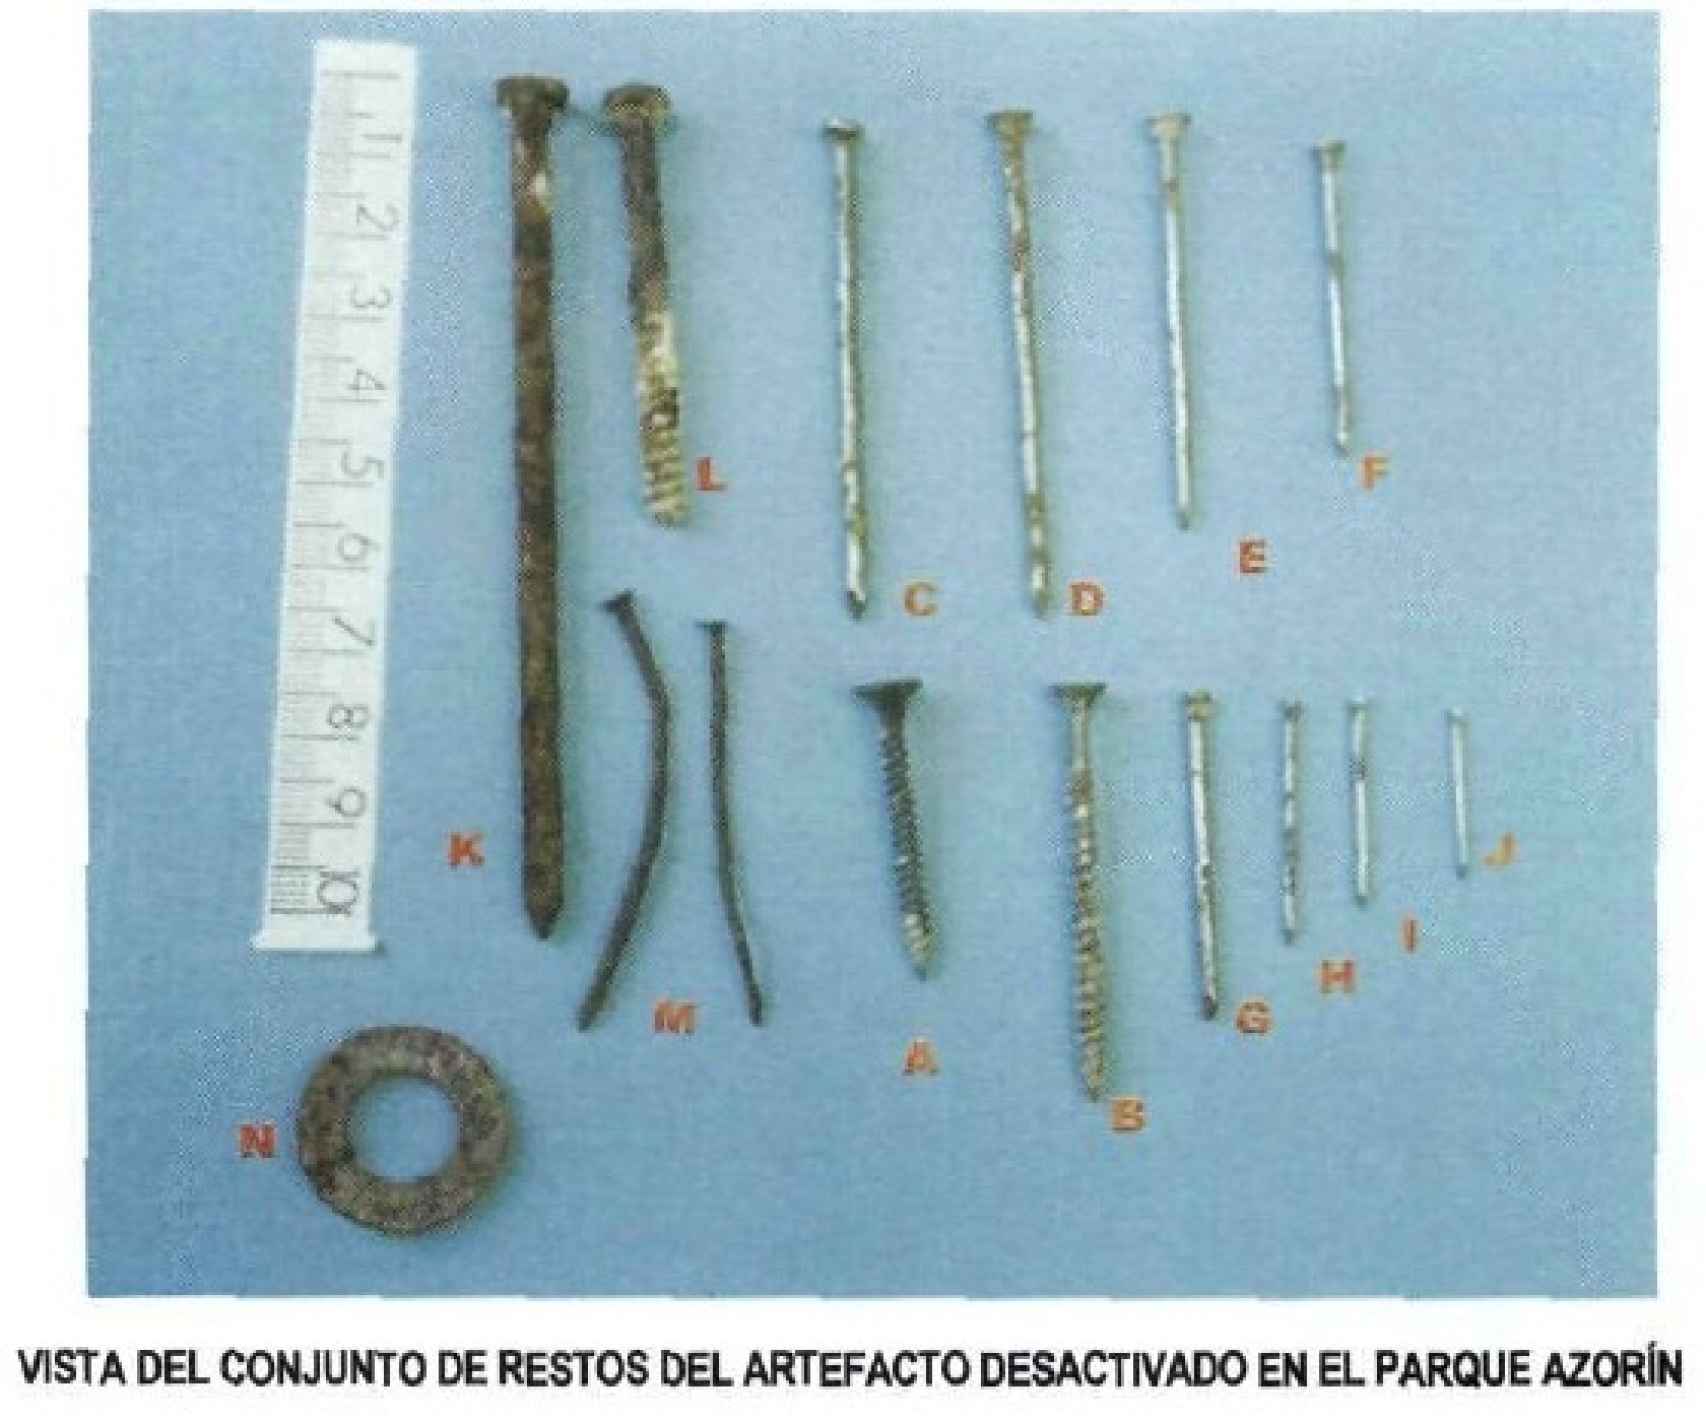 Modelos de la metralla atribuida a la mochila de Vallecas en el informe de diciembre de 2005.